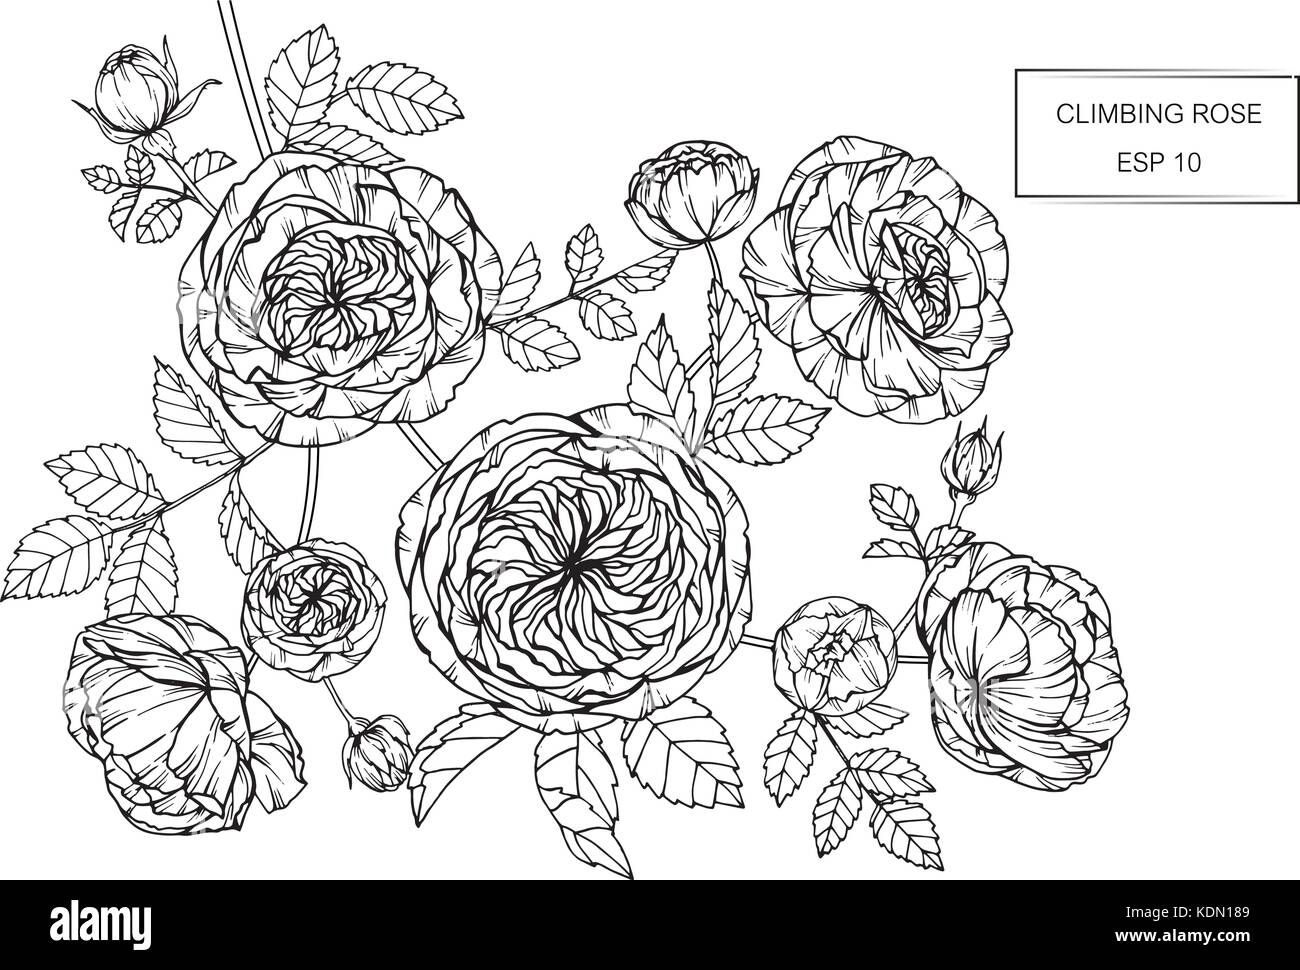 Dessin de fleurs roses illustration. Noir et blanc avec des illustrations. Illustration de Vecteur